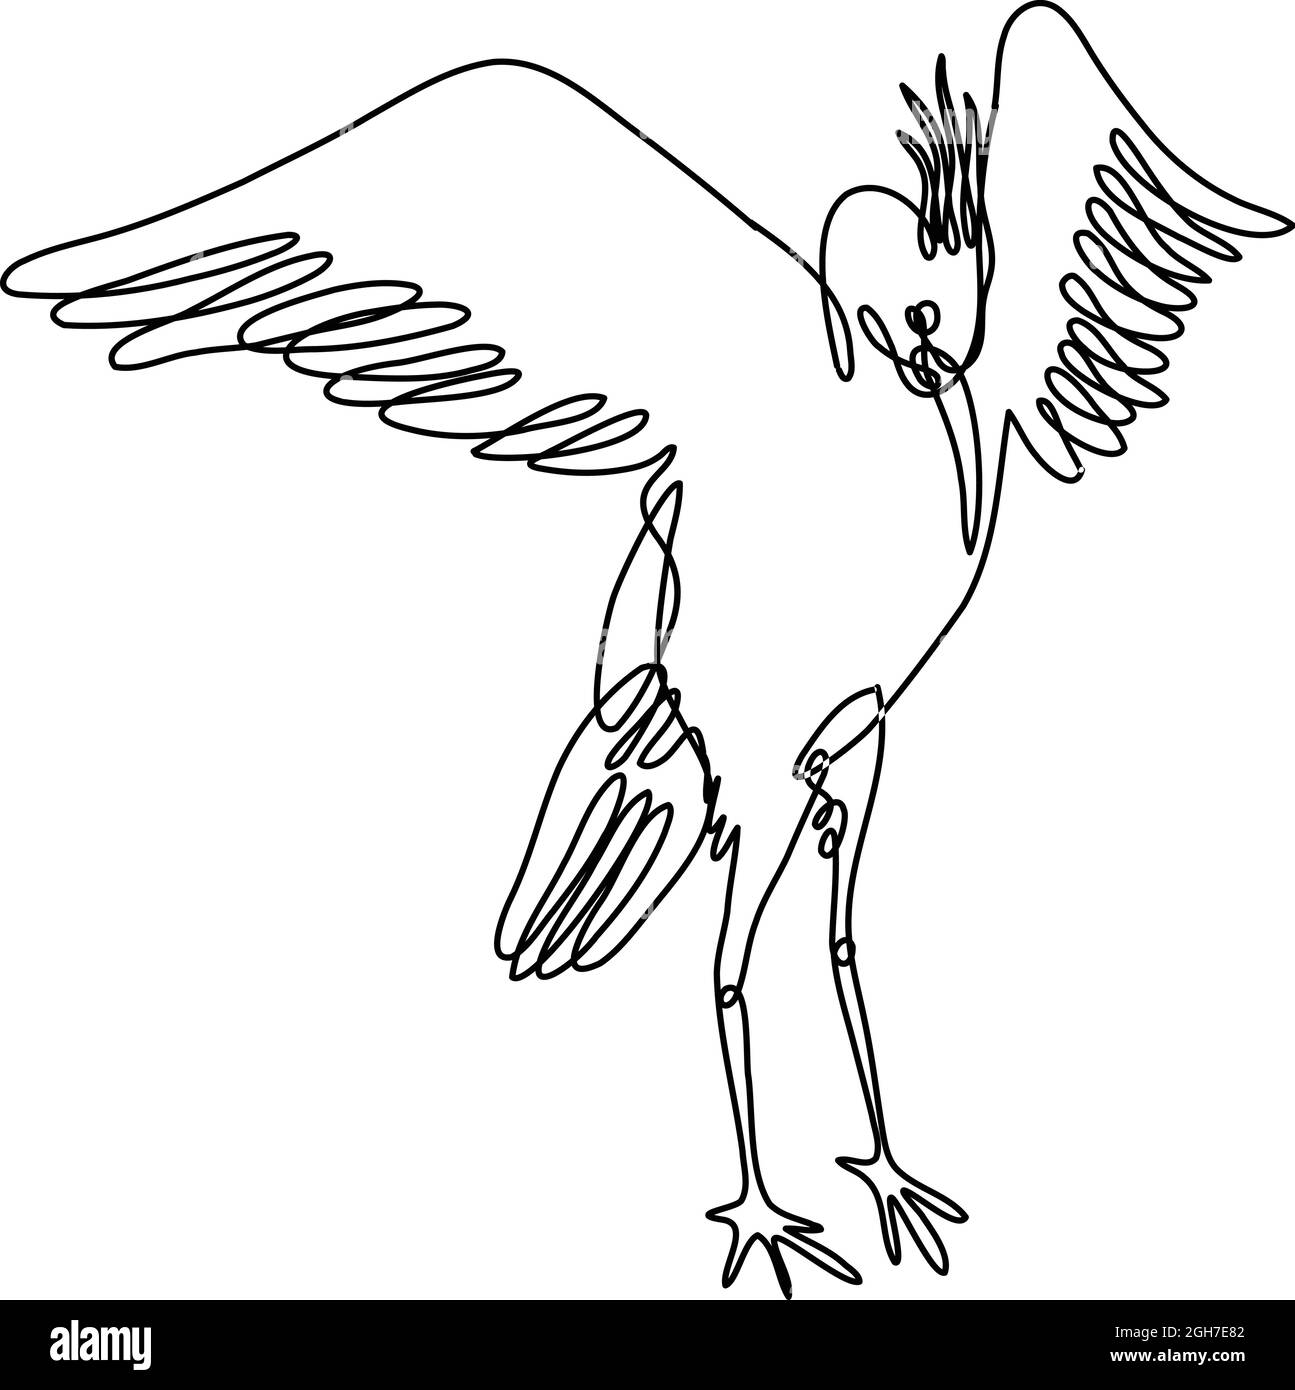 Durchgehende Linienzeichnung Illustration eines Krans, der die Flügel ausbreitet, Vorderansicht in Mono-Line oder Doodle-Stil in Schwarz und Weiß auf isoliertem Hintergrund Stock Vektor